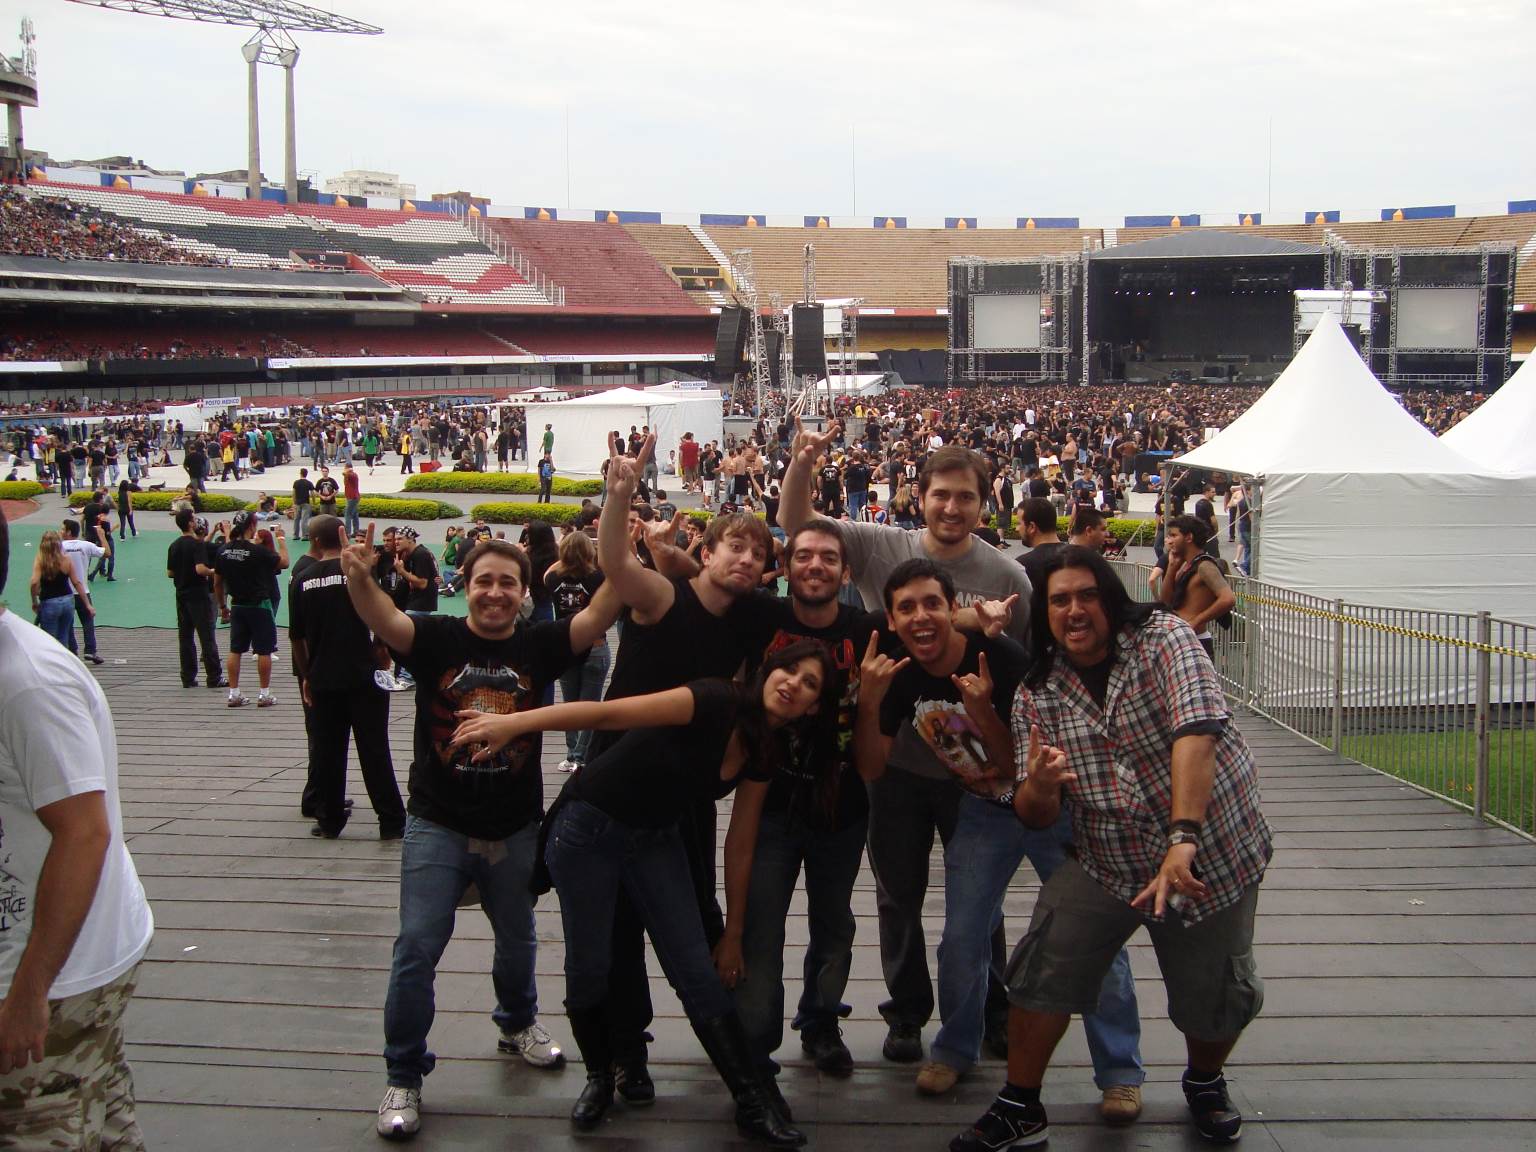 Show do Metallica - 2010